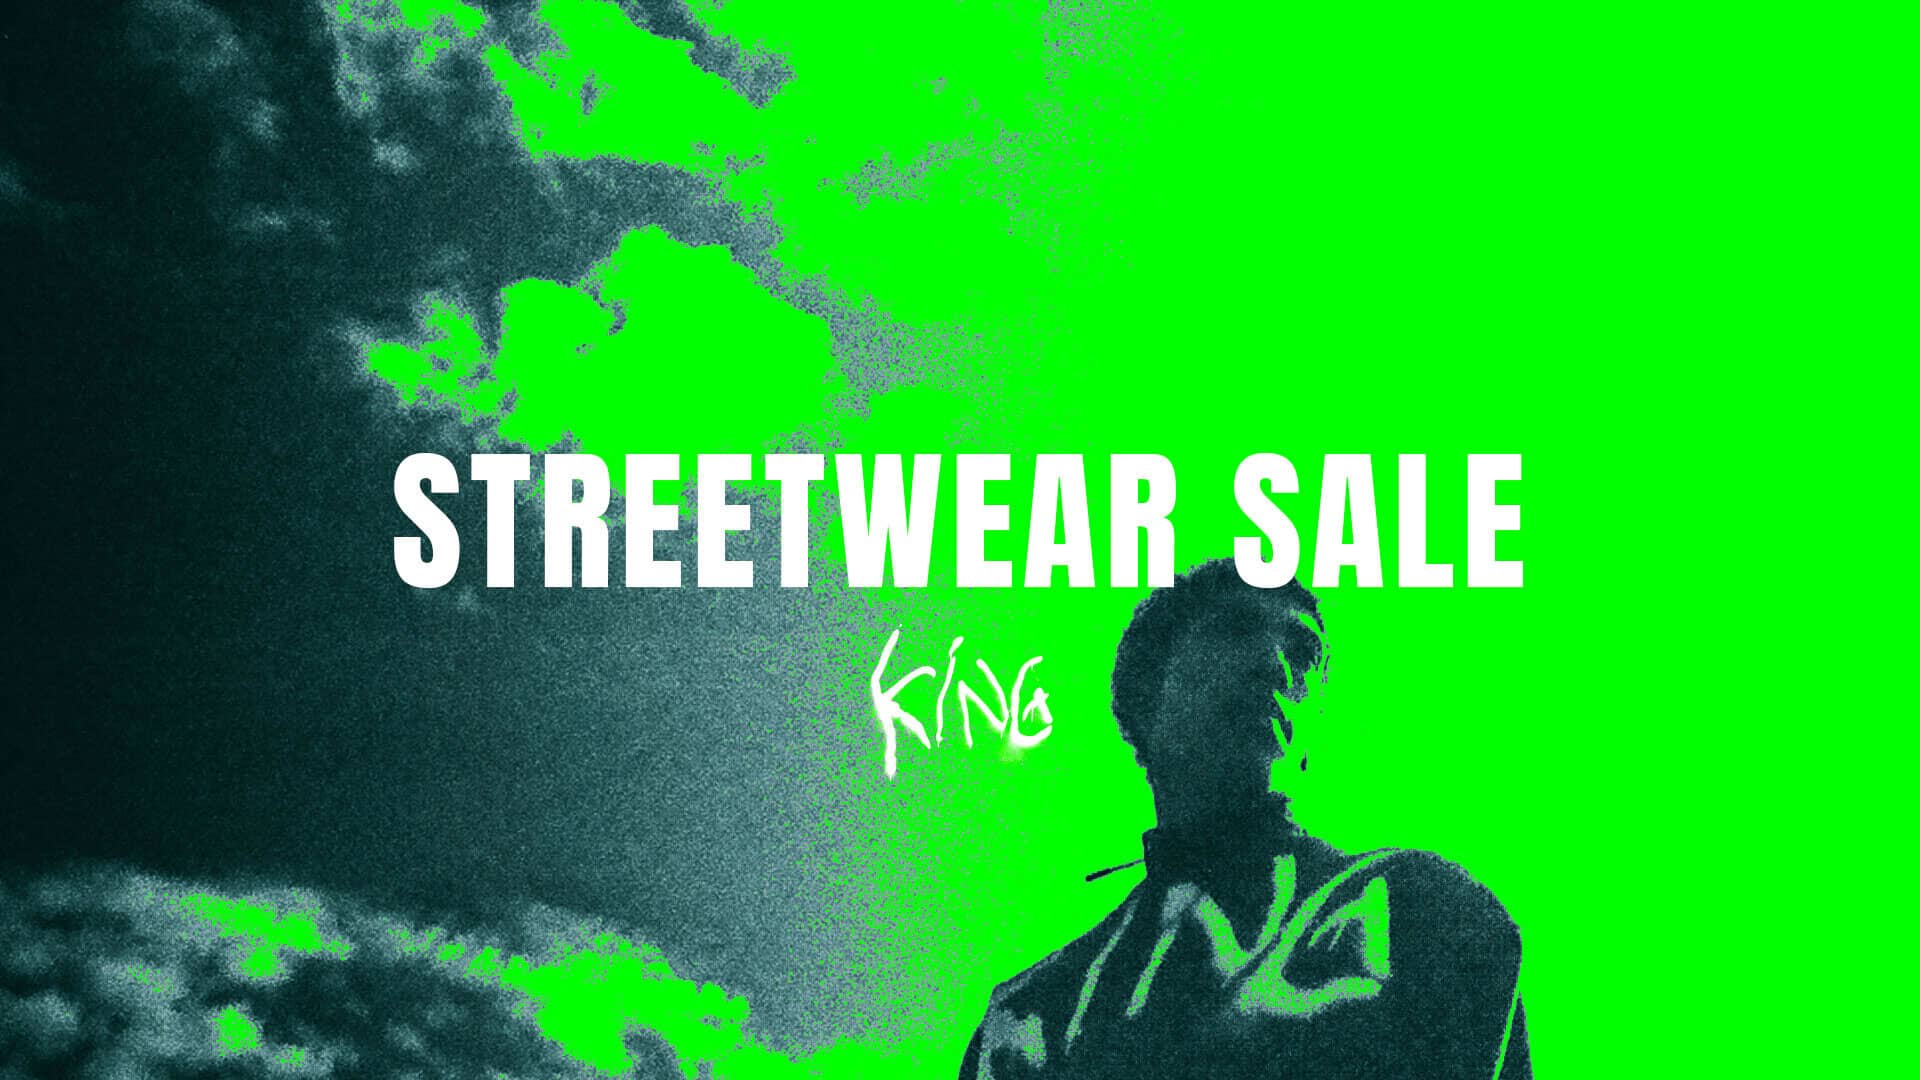 KING Apparel > Streetwear Sale